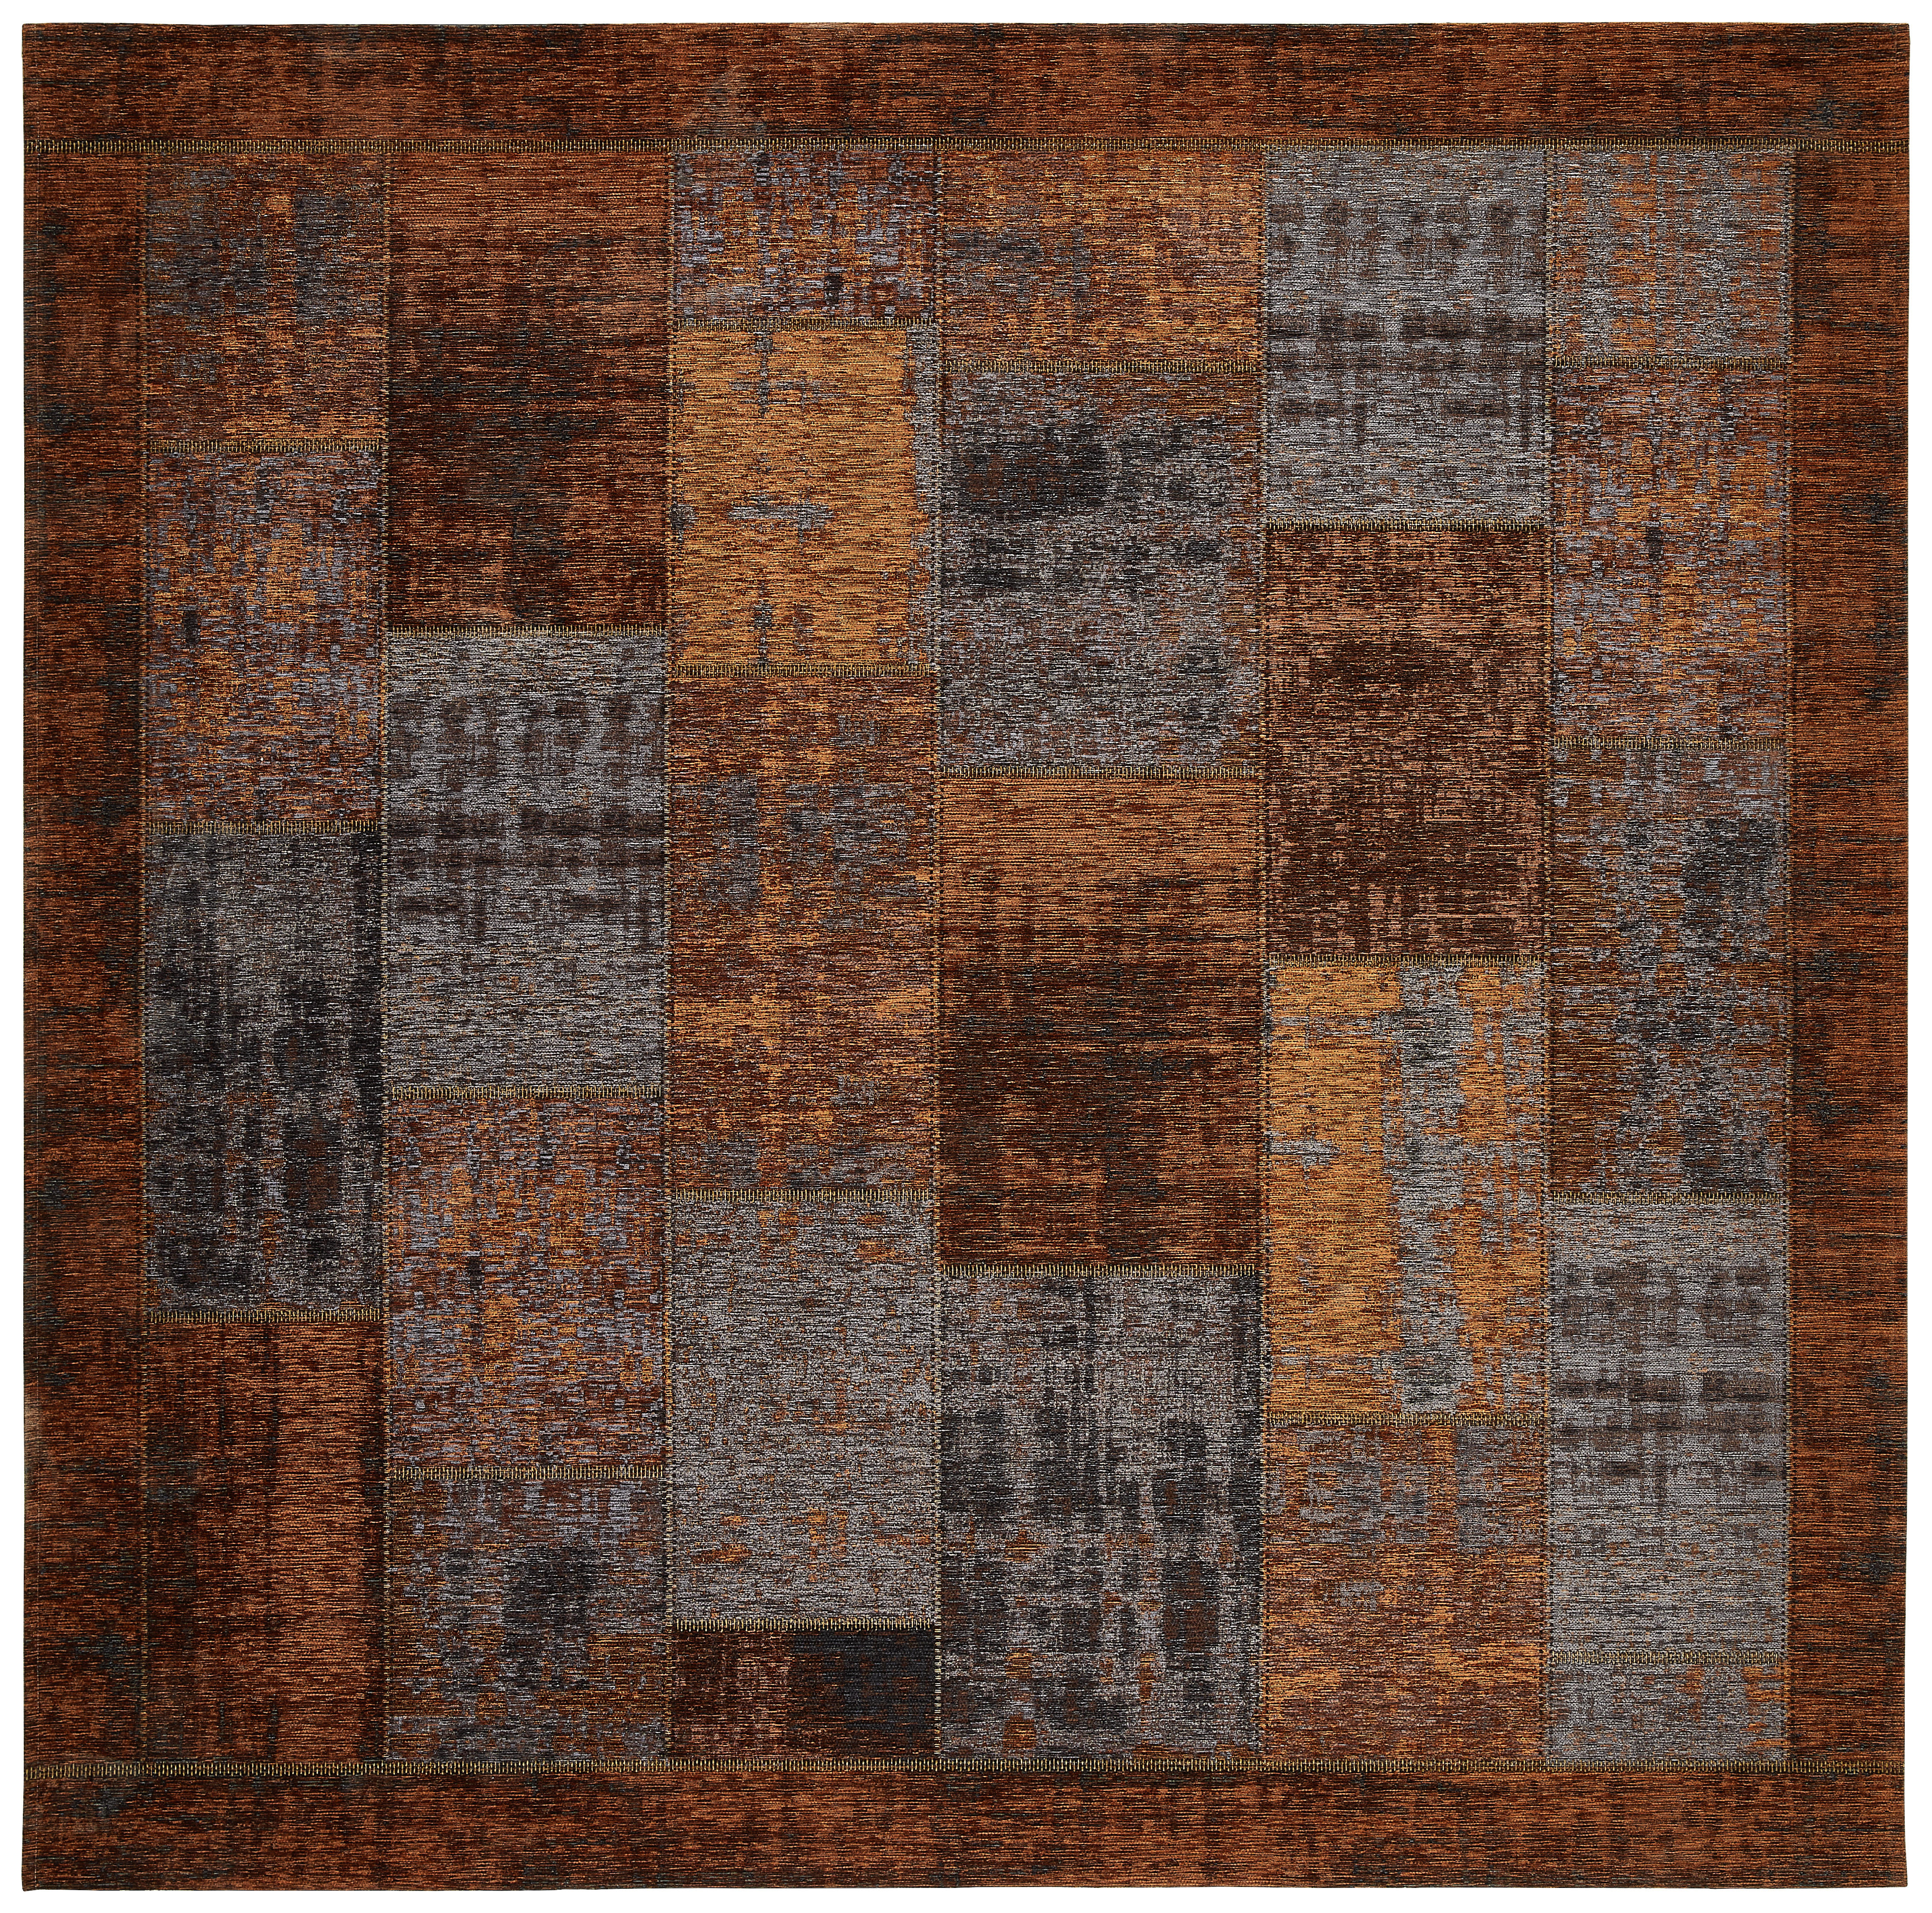 FLACHWEBETEPPICH  200/200 cm  Kupferfarben   - Kupferfarben, Trend, Textil (200/200cm) - Novel